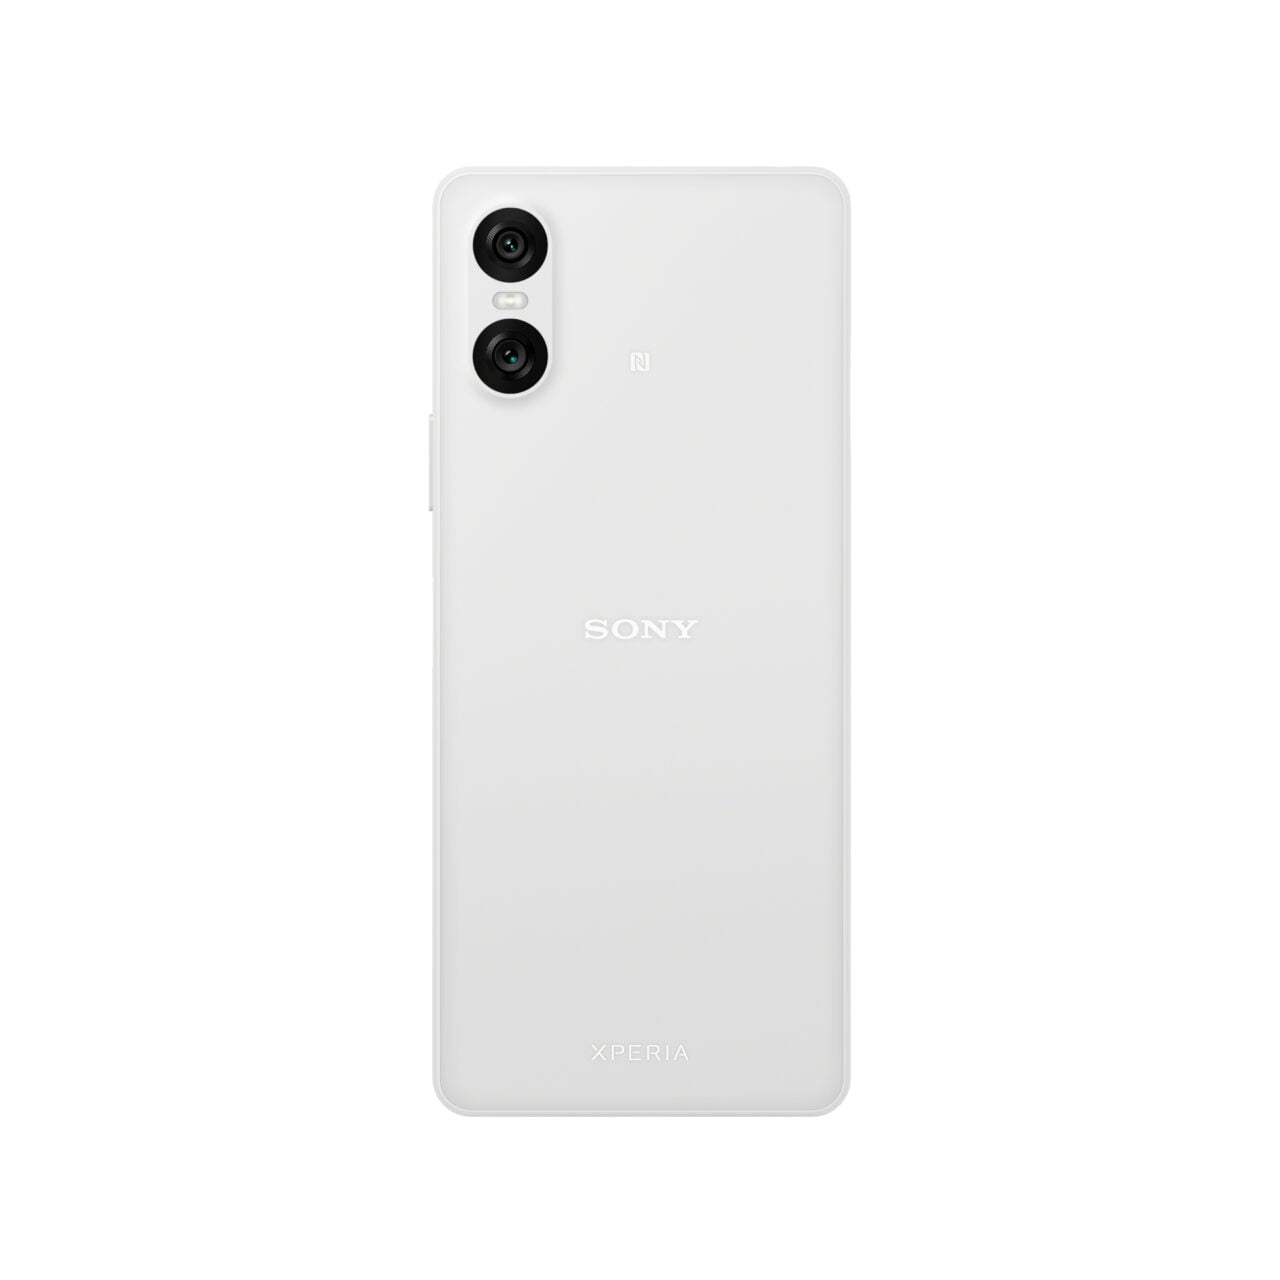 Tył białego smartfona Sony Xperia z podwójnym aparatem.